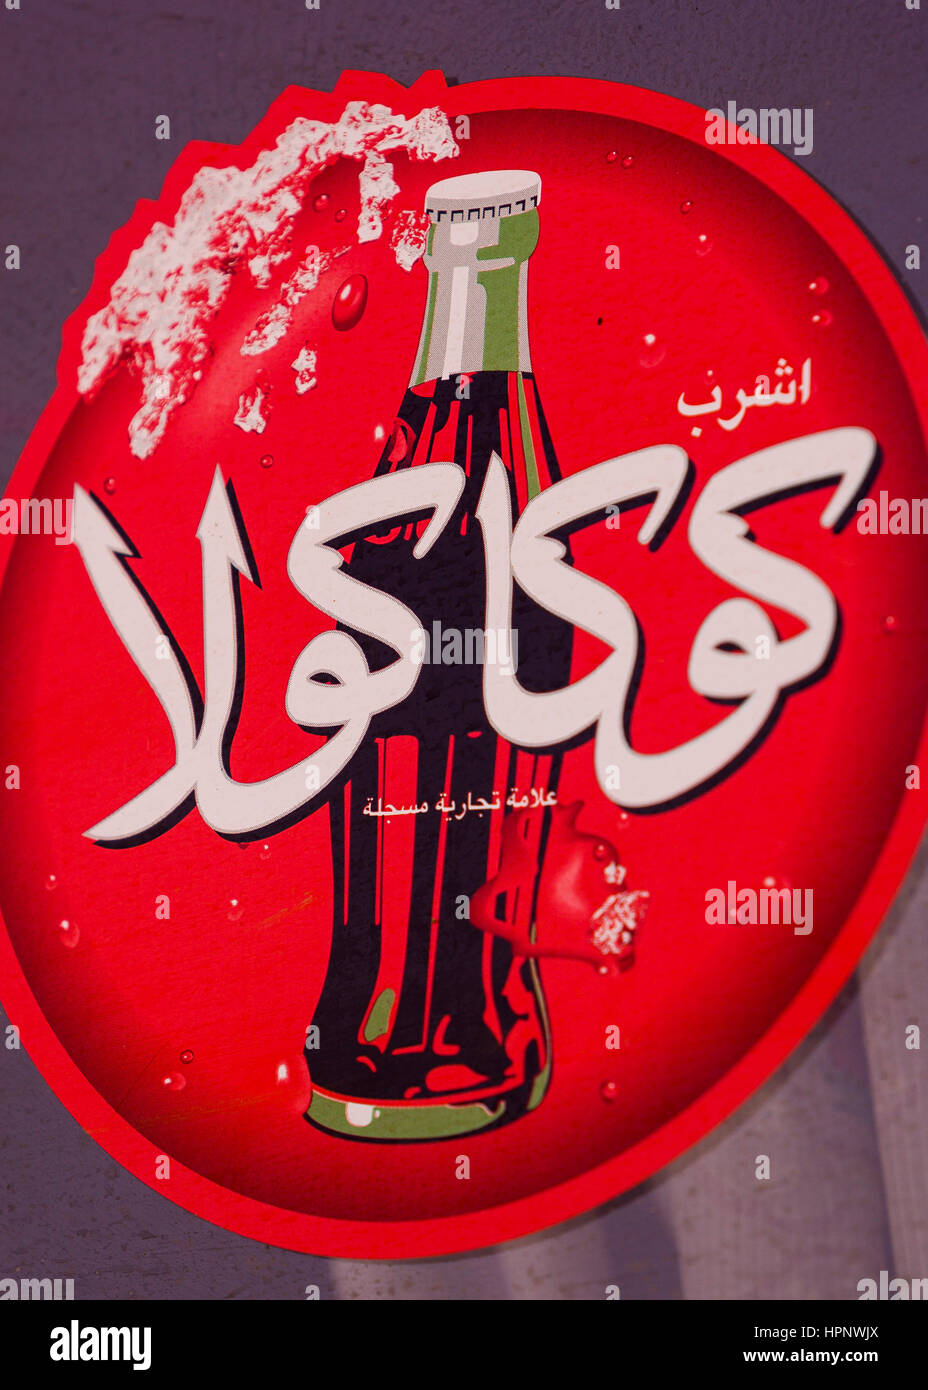 AL AIN, Vereinigte Arabische Emirate - rot Coca-cola Schild in Arabisch, zeigt Flasche Cola. Stockfoto